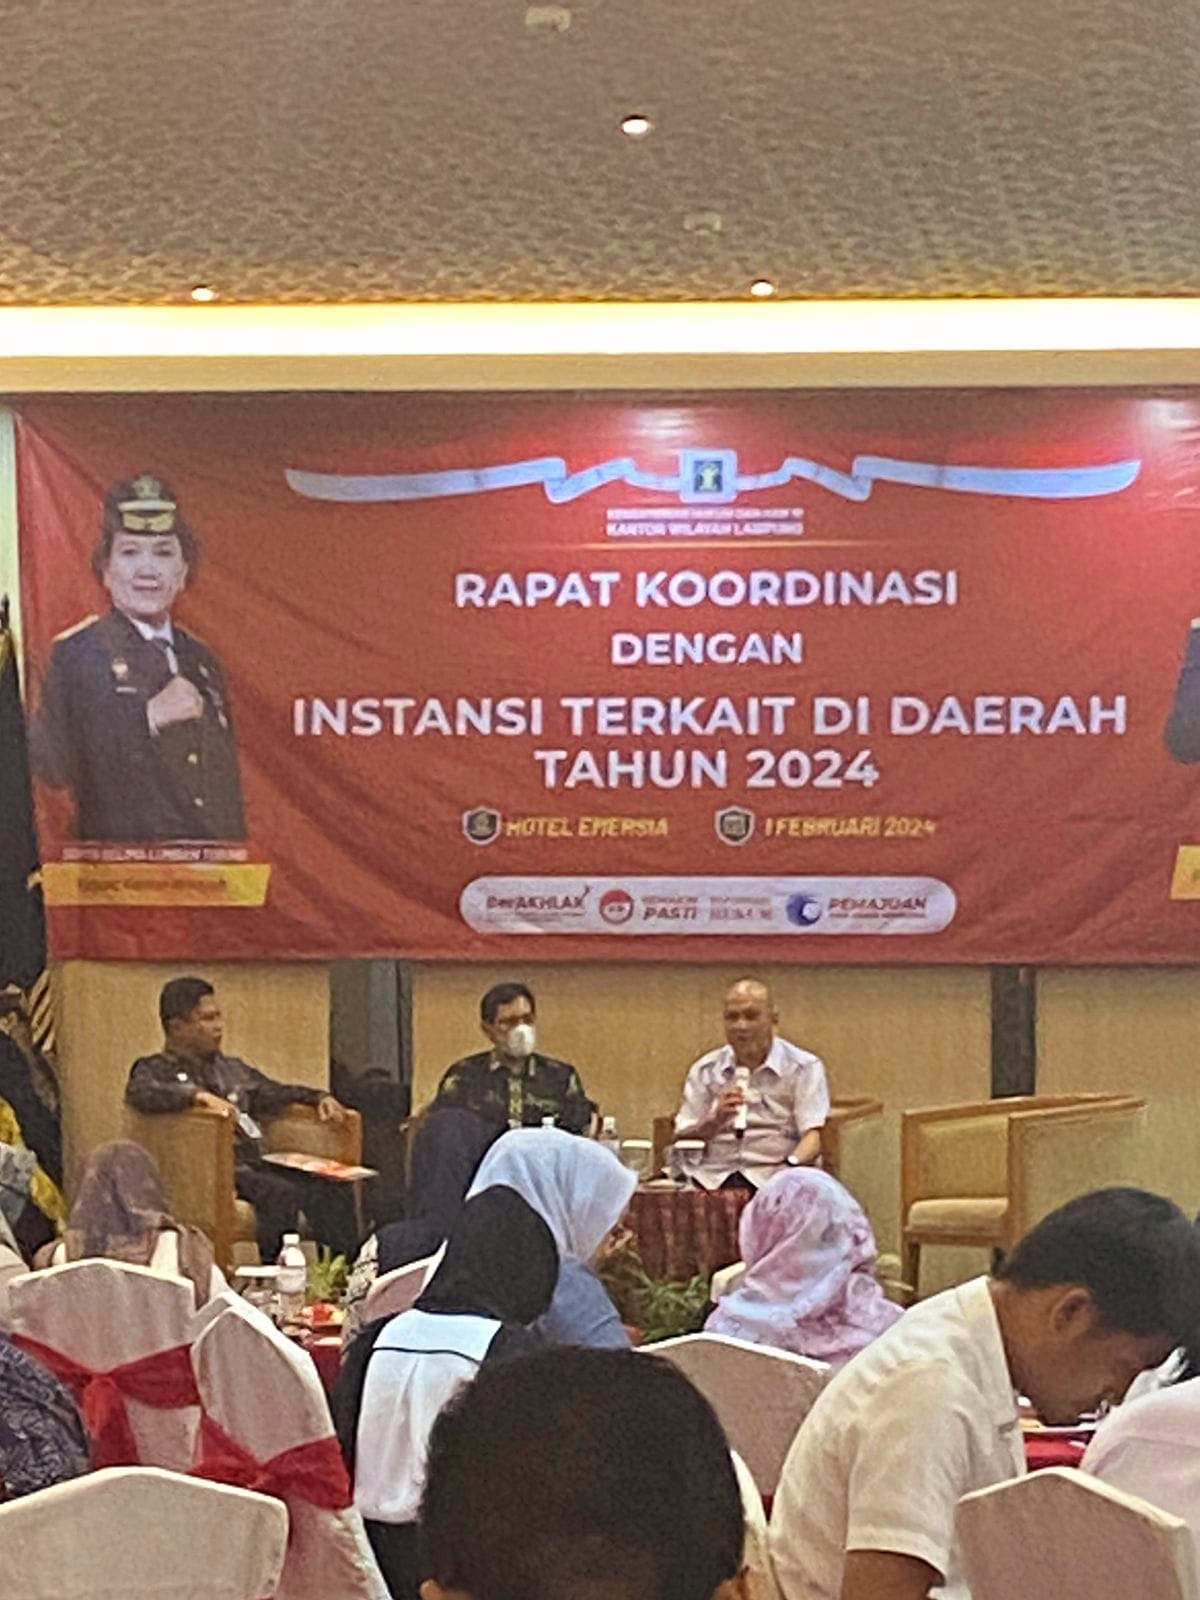 Biro Hukum Hadiri Rapat Koordinasi Kemenkumham RI Kanwil Lampung 2024